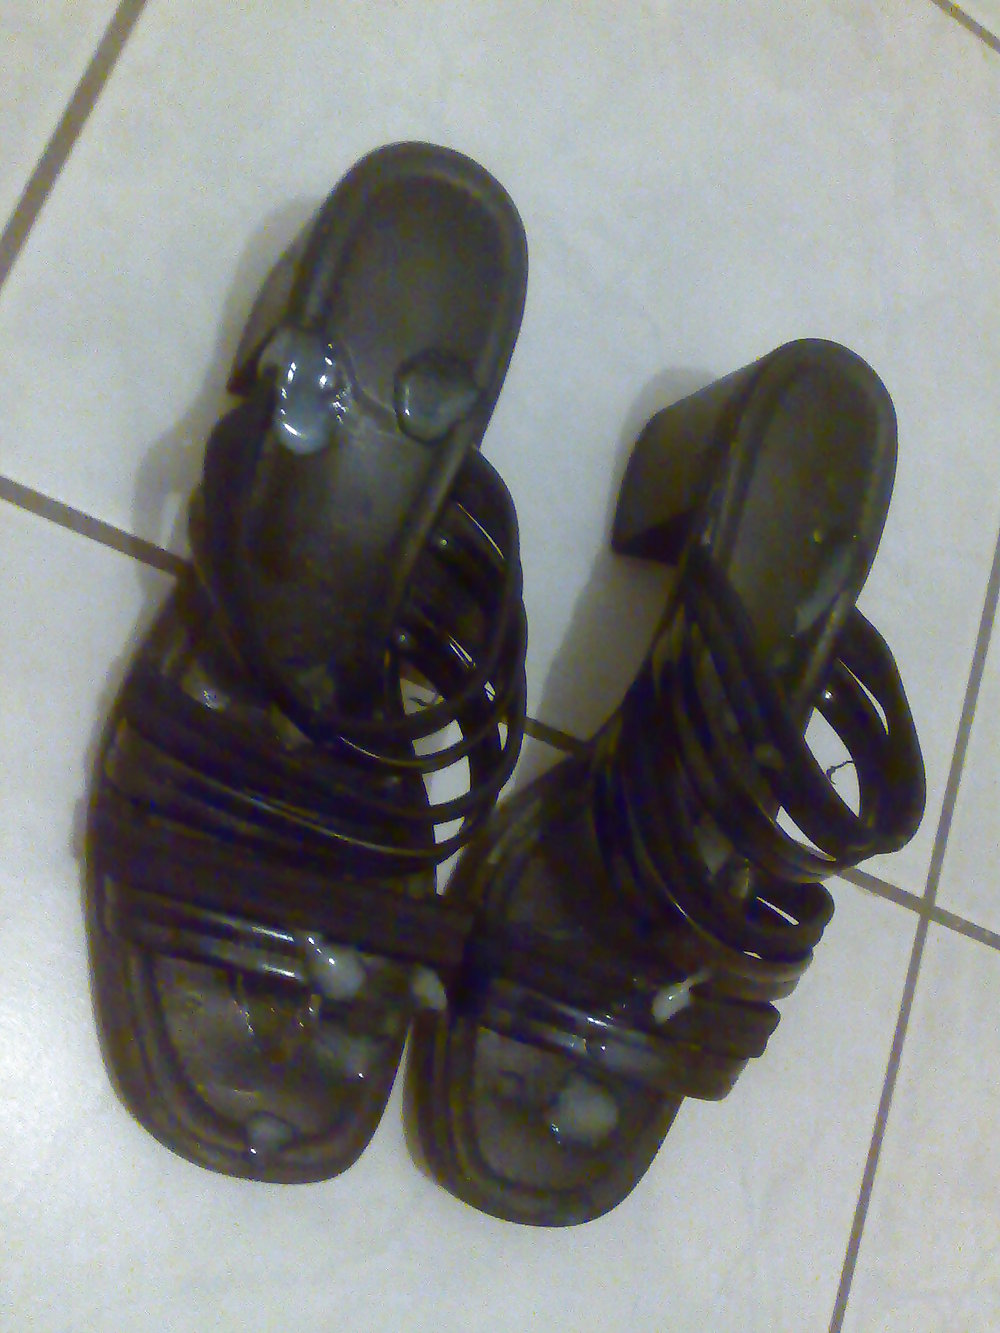 Cum on shoes of neighborhood nachbarschafts schuhe bespritzt #8039874